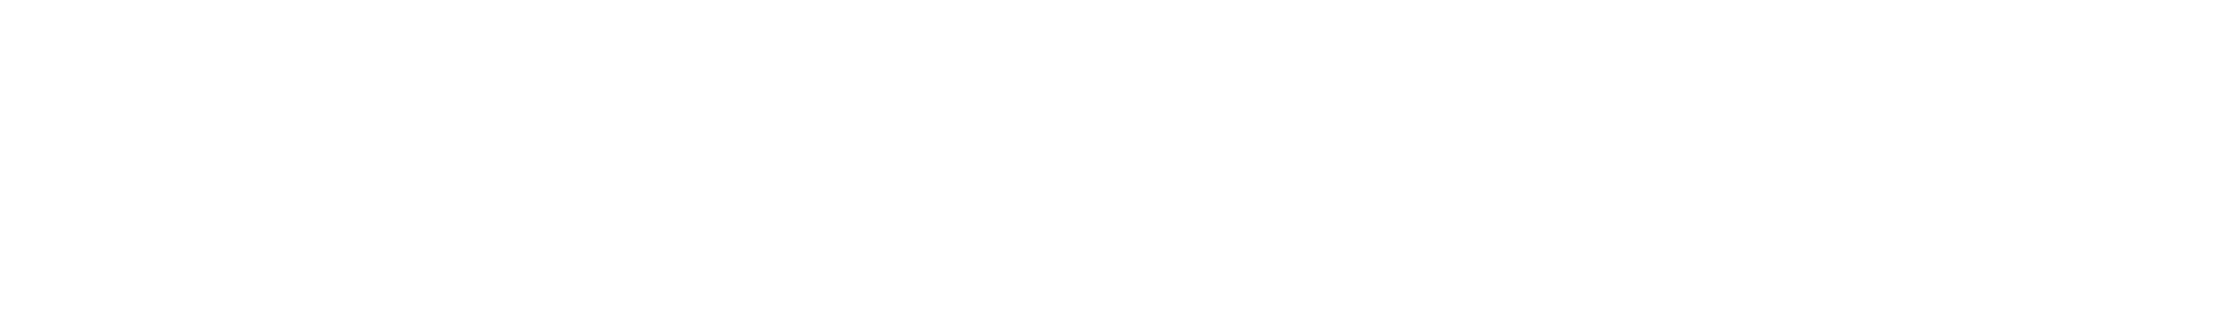 airotransfer-logo-dark